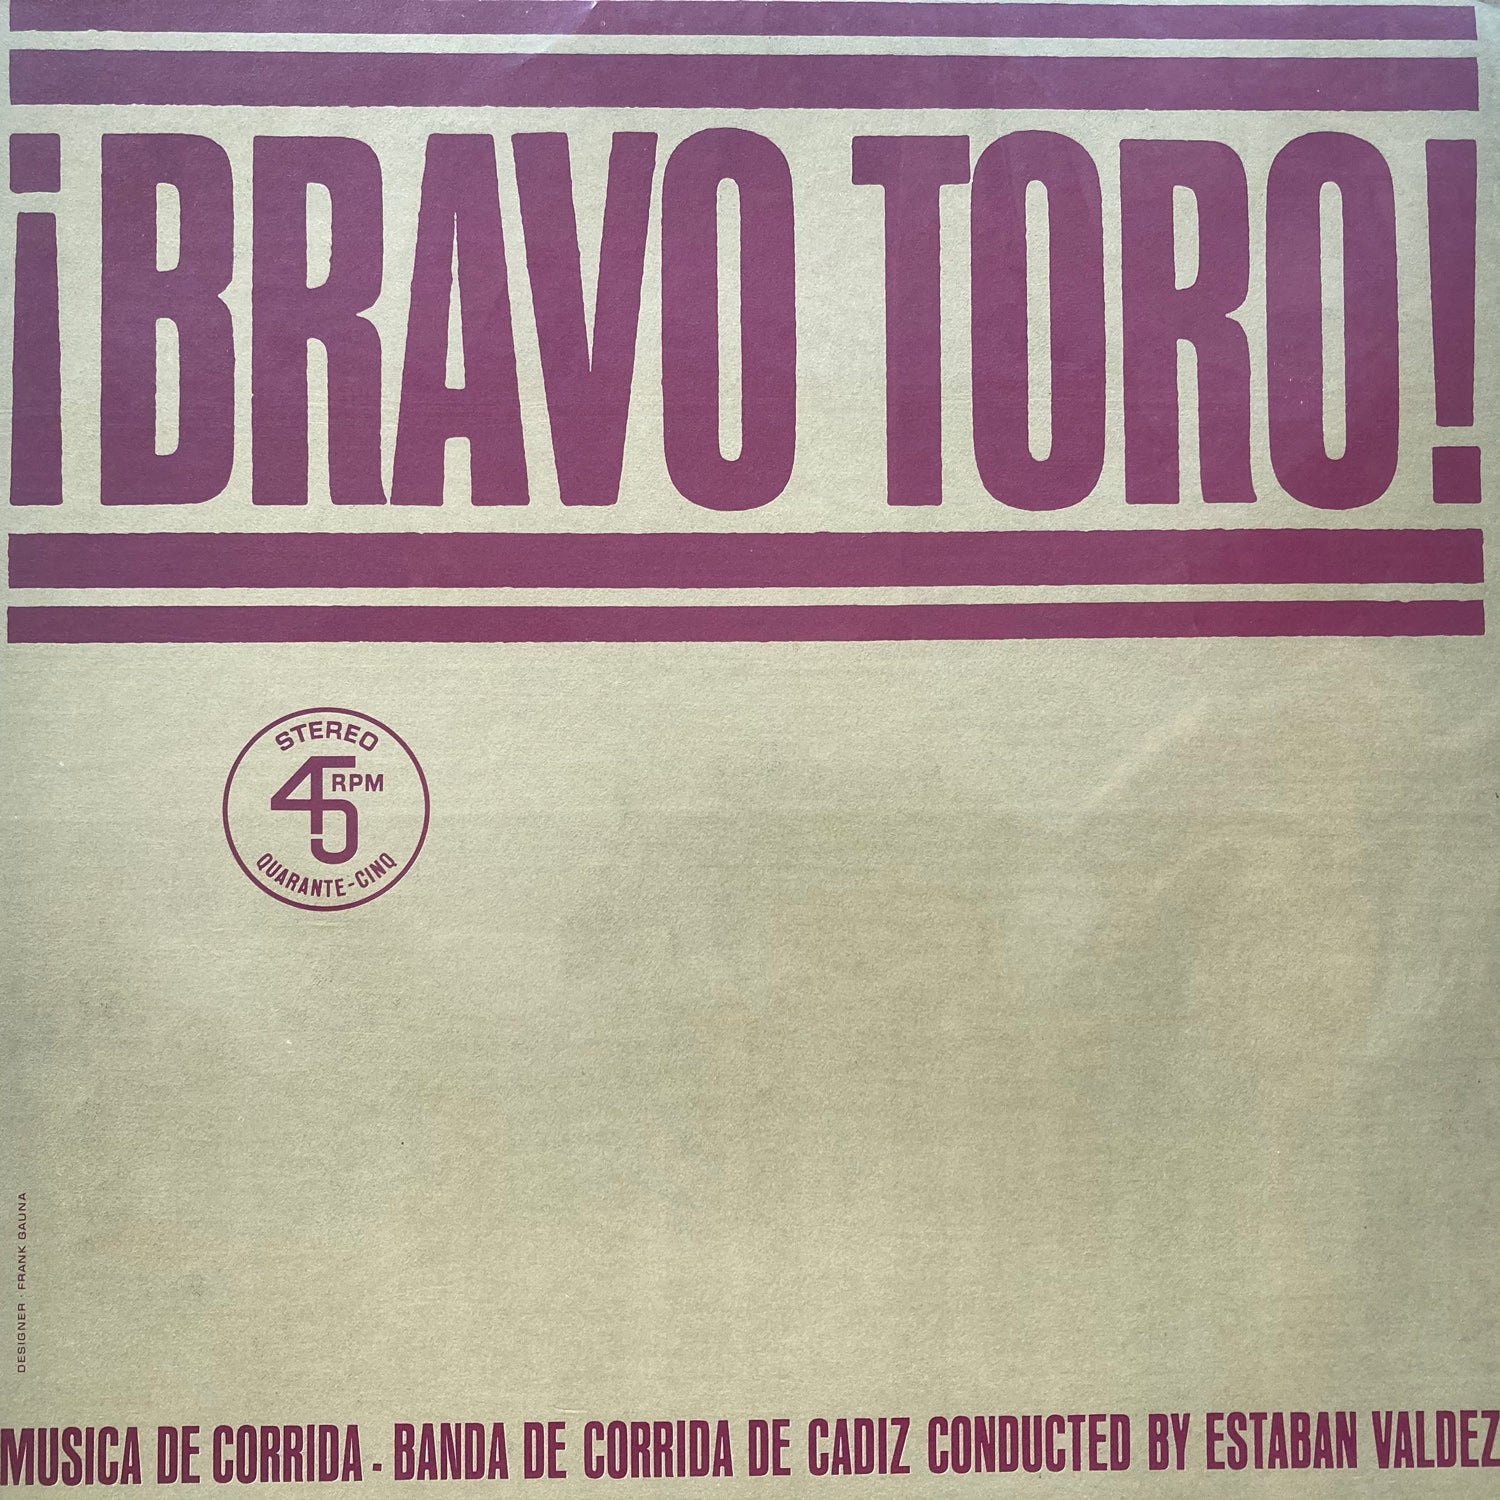 Bravo Toro - Musica de Corrida Conducted by Esteban Valdez